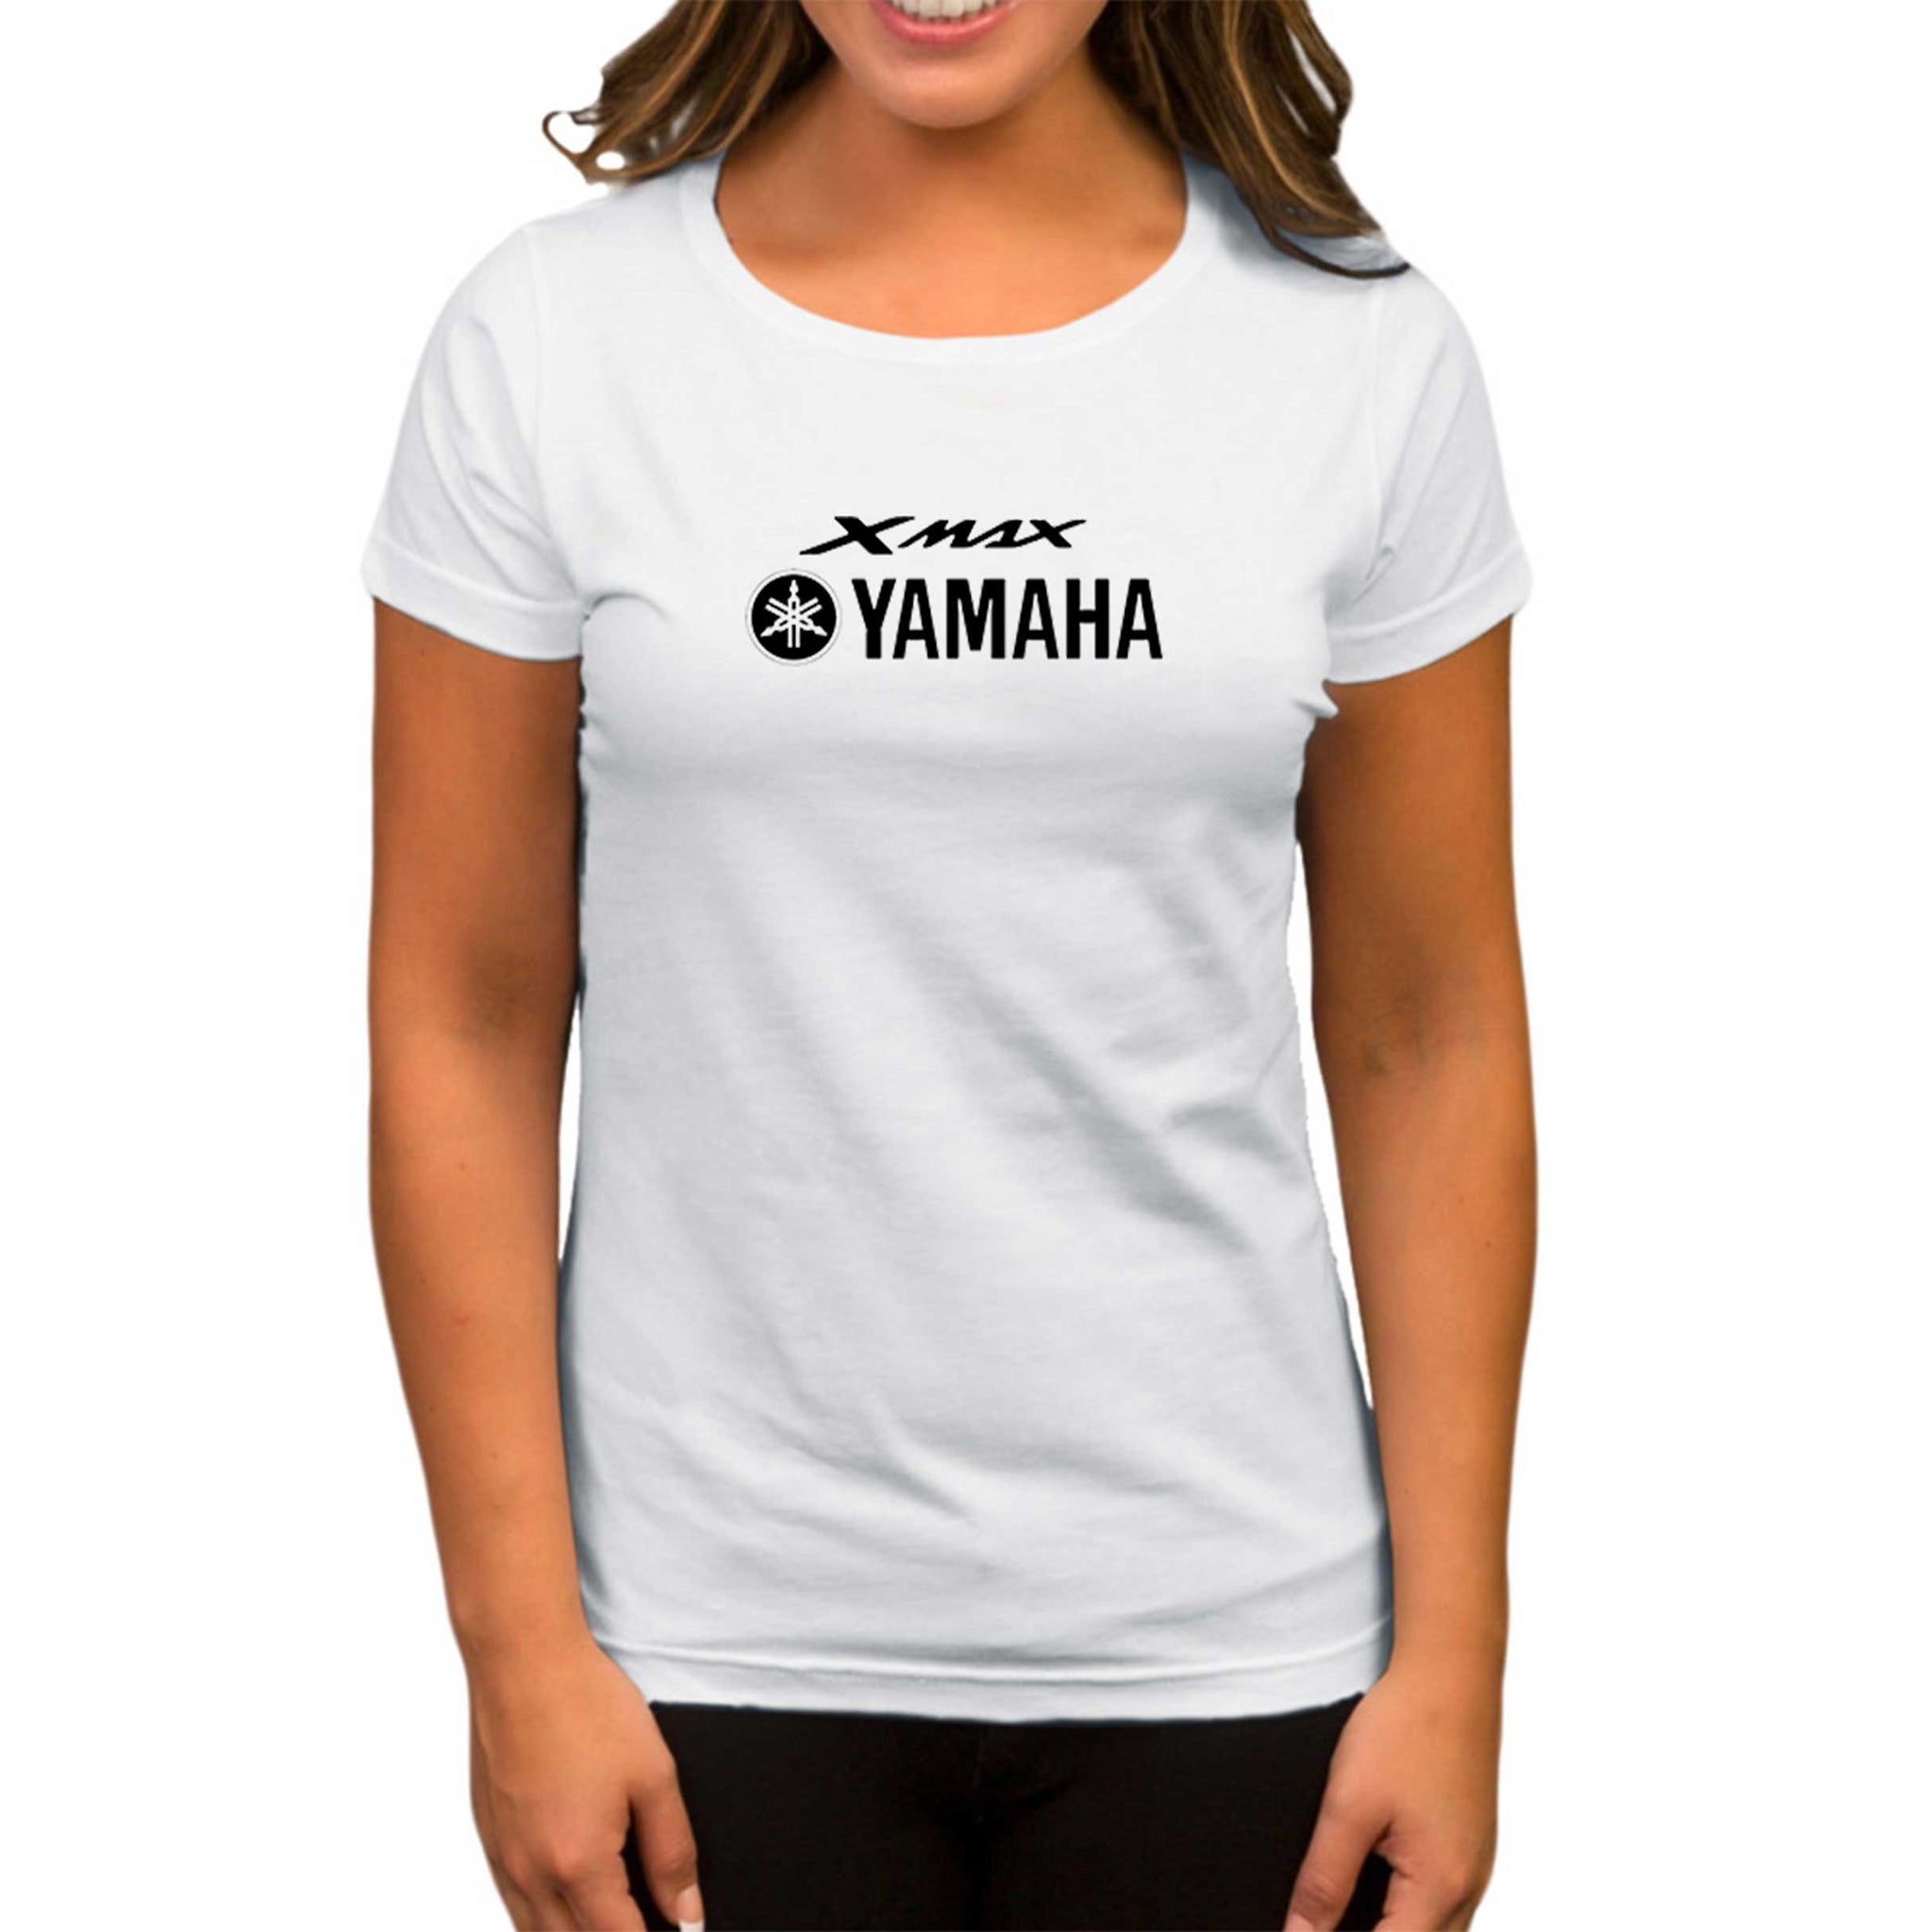 Yamaha Xmax Text Beyaz Kadın Tişört